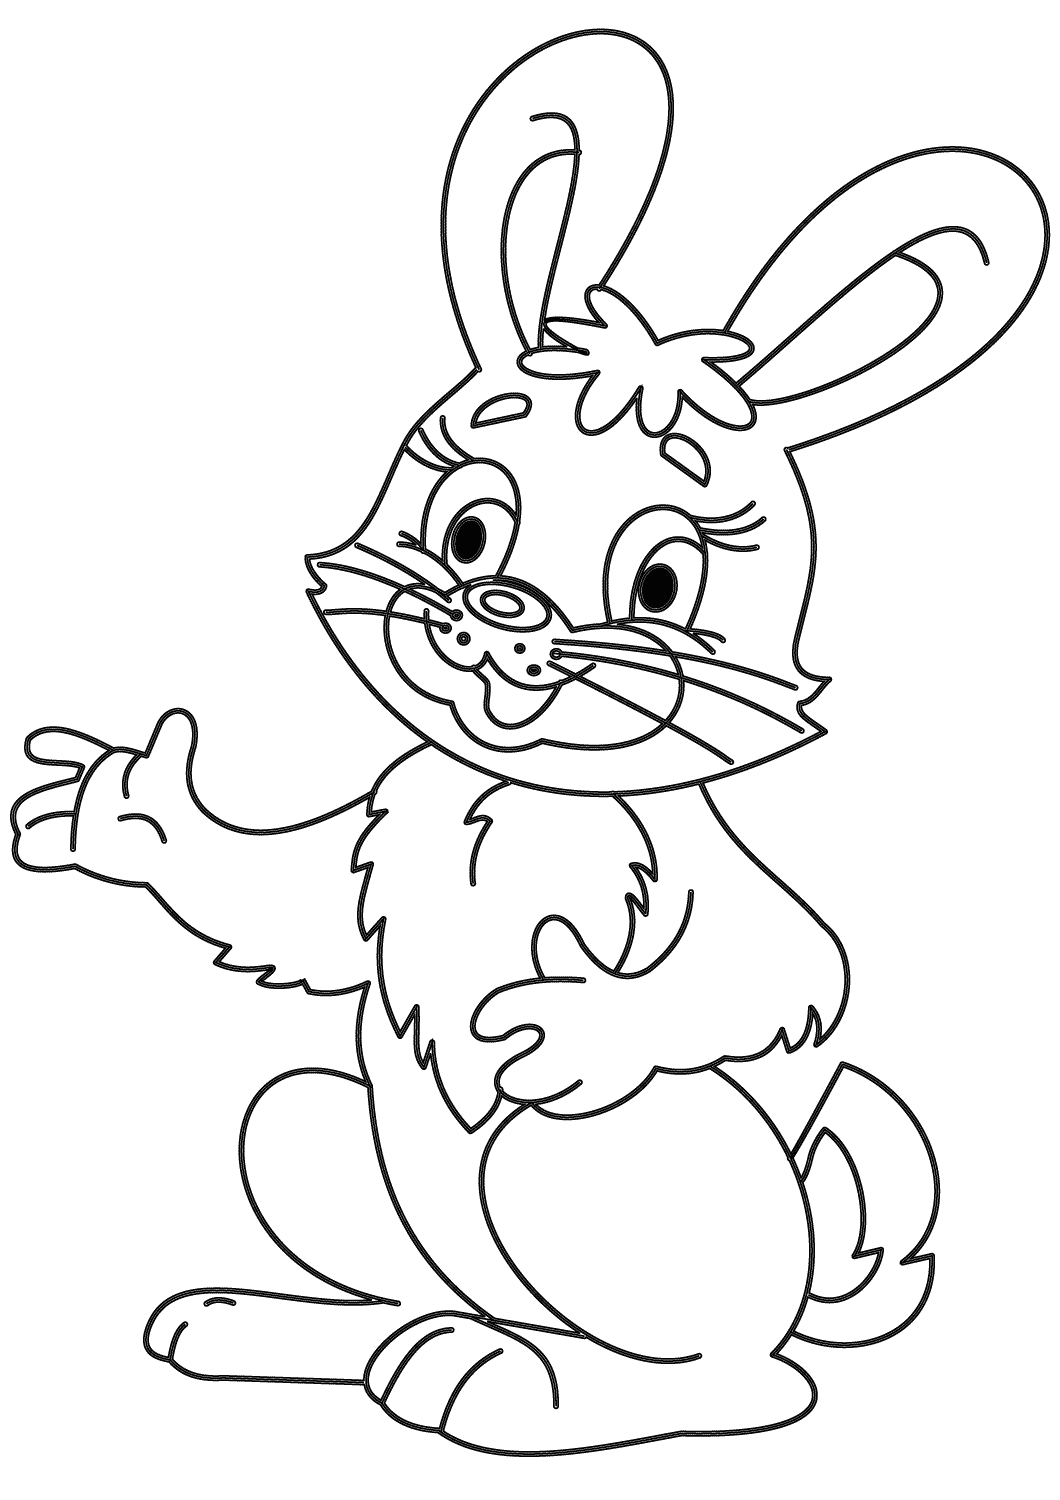 Schatje cartoon konijntje praat iets van Bunny